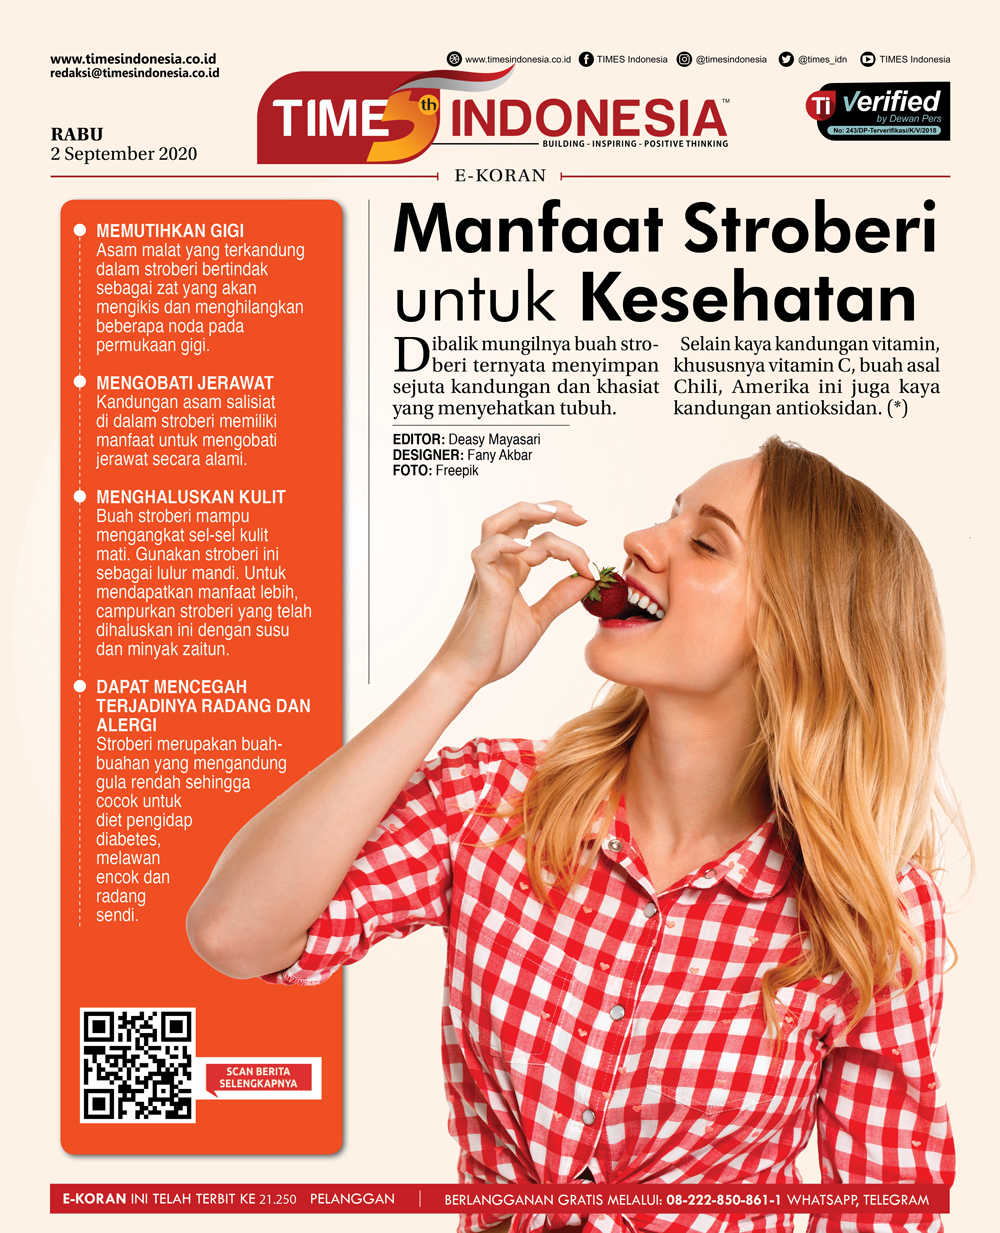 Edisi-Rabu-2-September-2020-Manfaat-Stroberi-untuk-Kesehatan.jpg